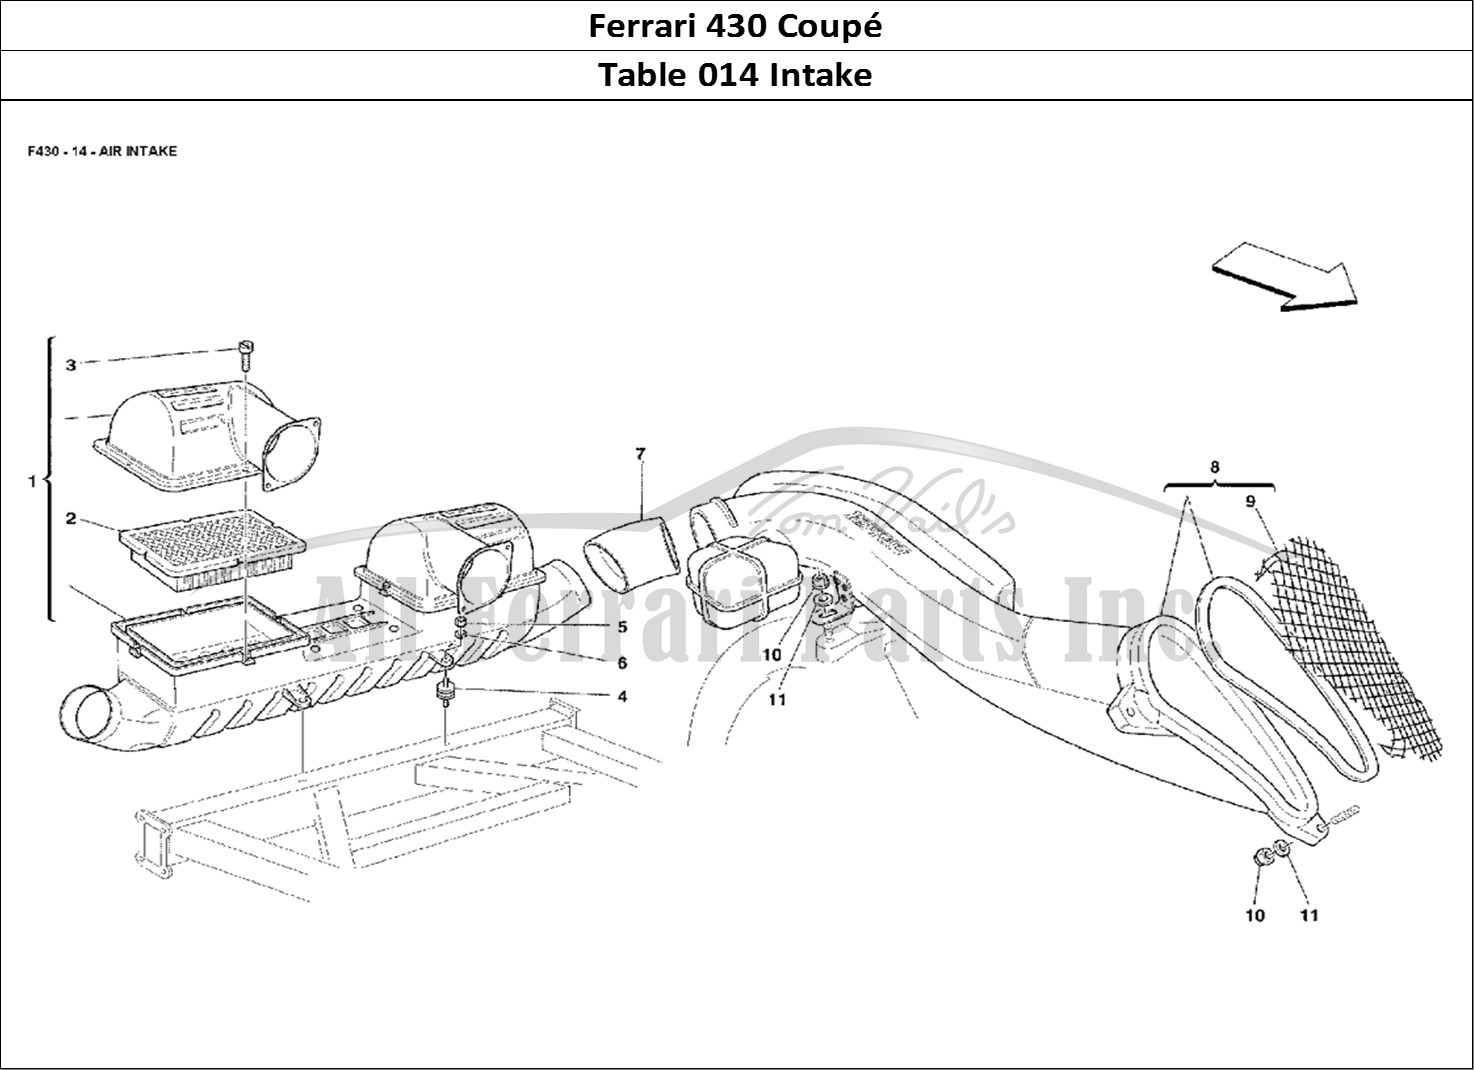 Ferrari Parts Ferrari 430 Coup Page 014 Air Intake